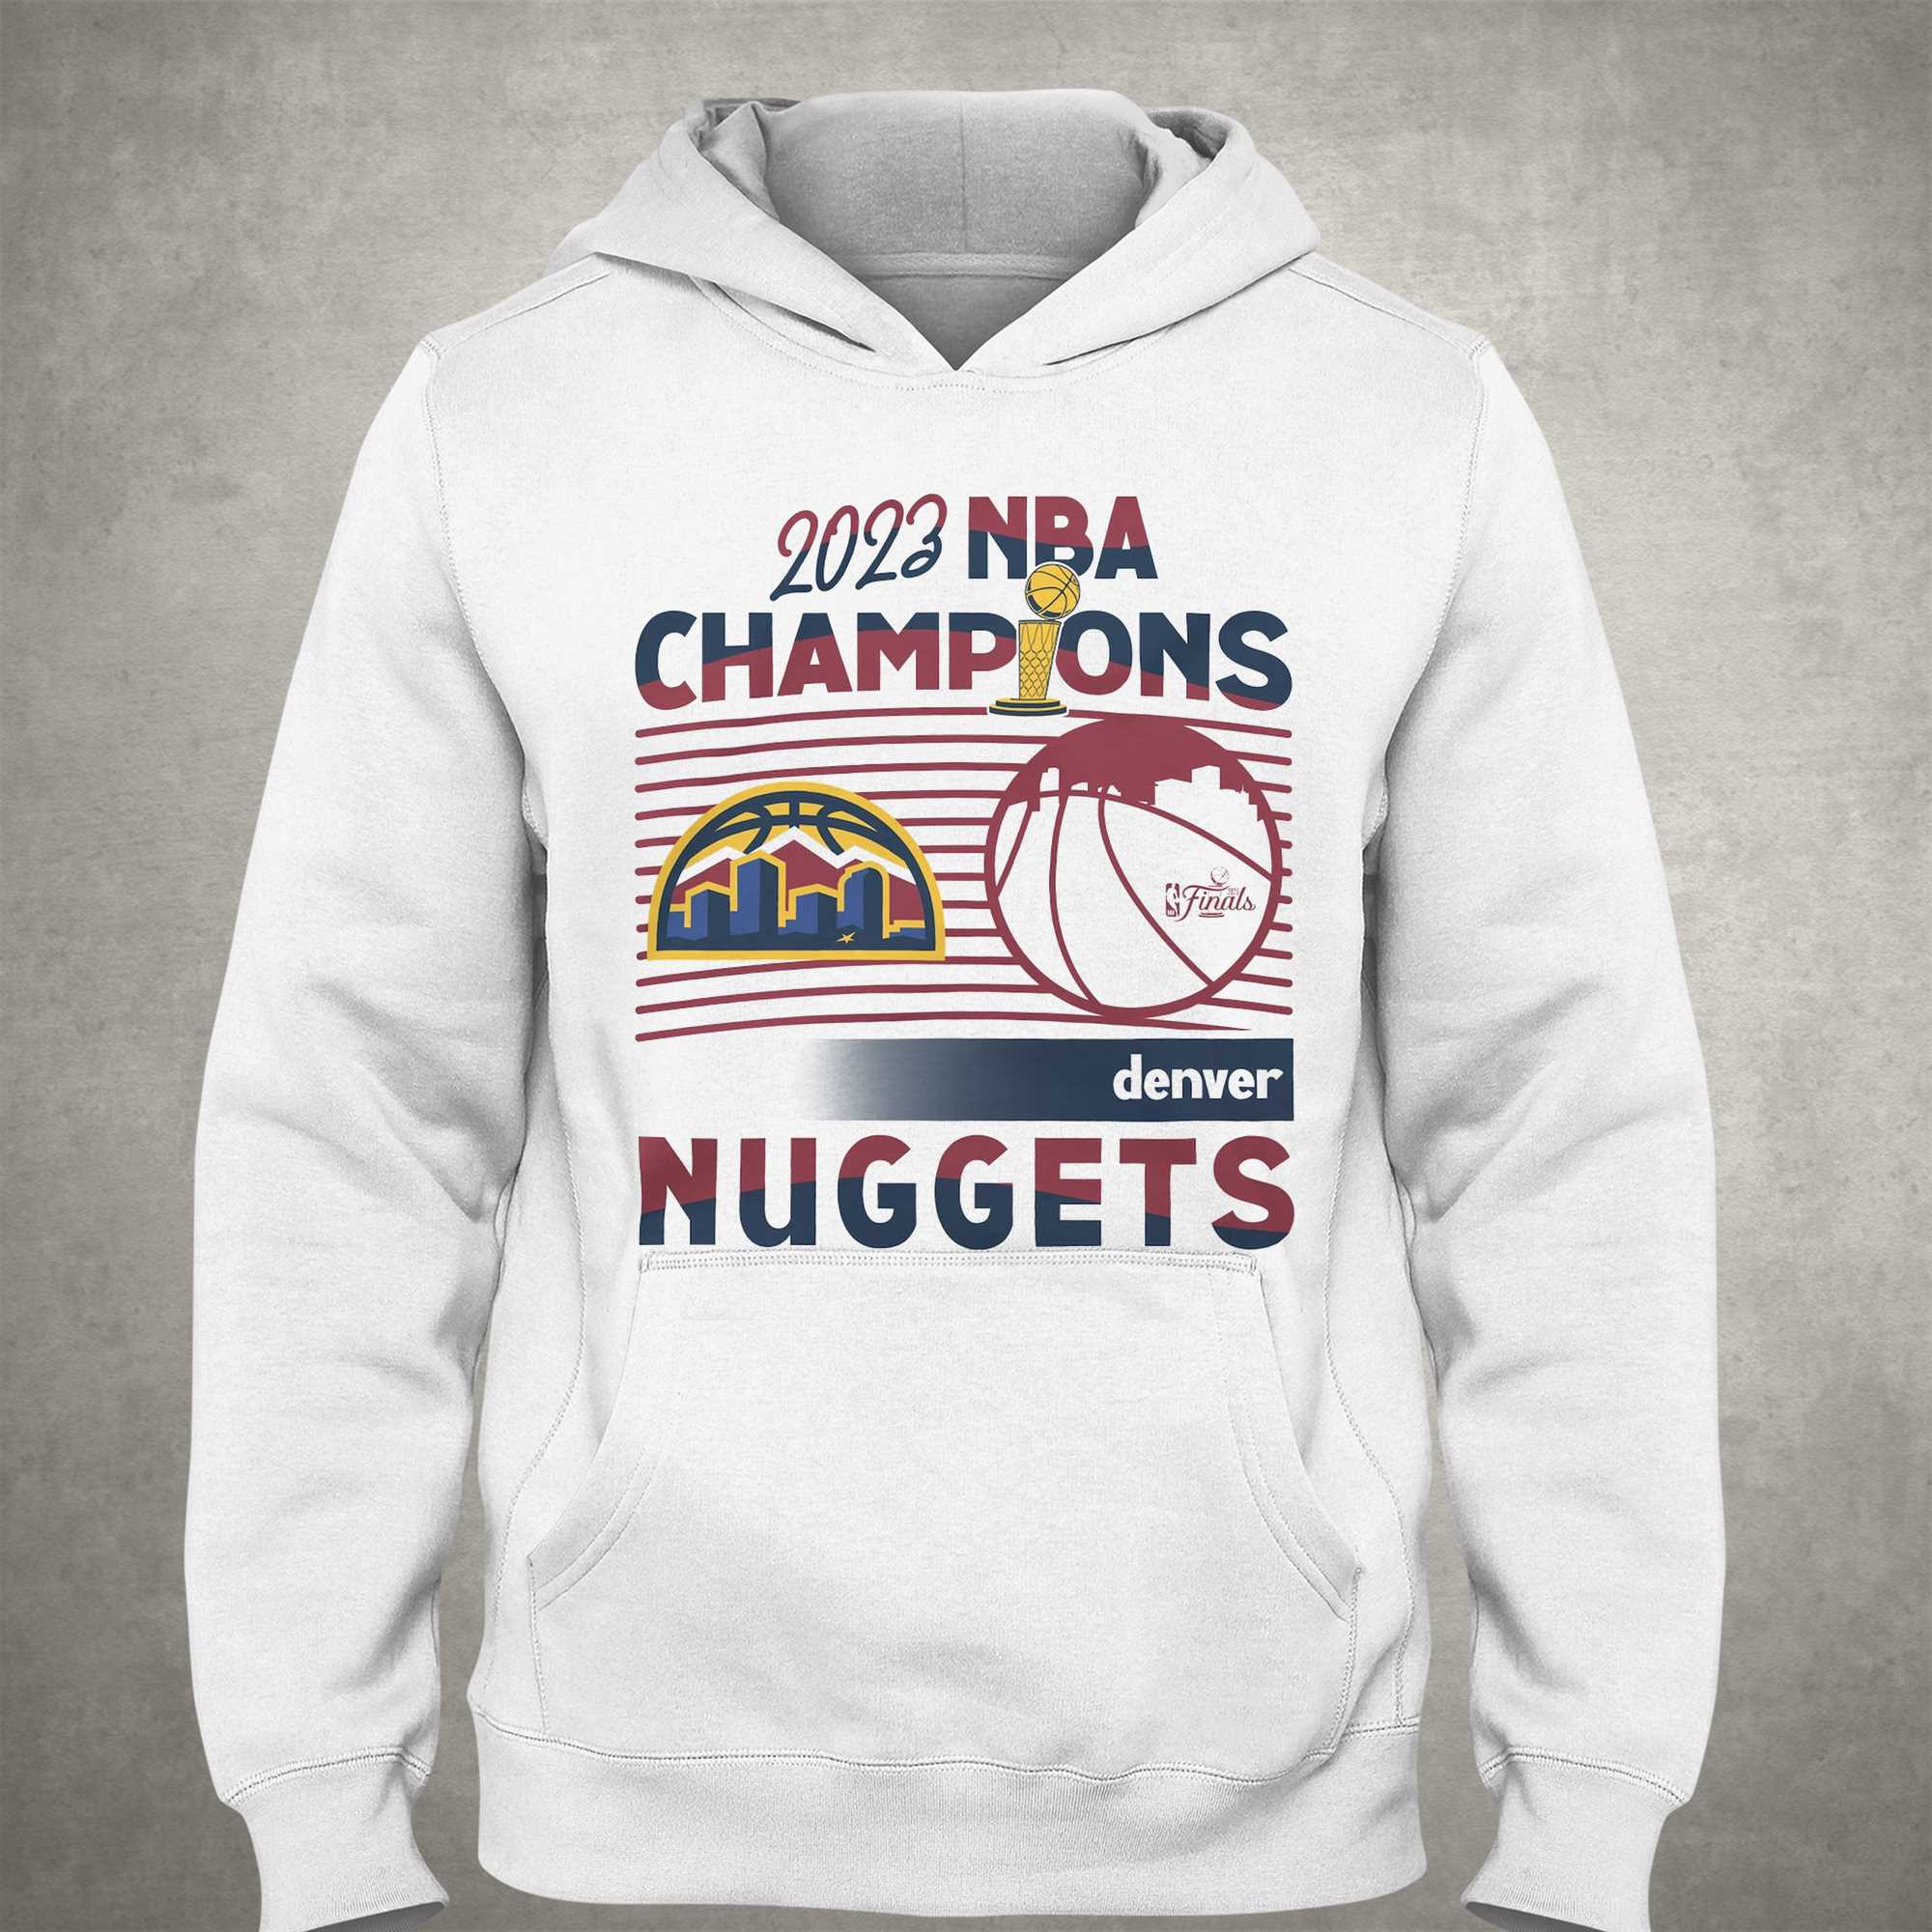 2023 nba champions denver nuggets vintage retro shirt, hoodie